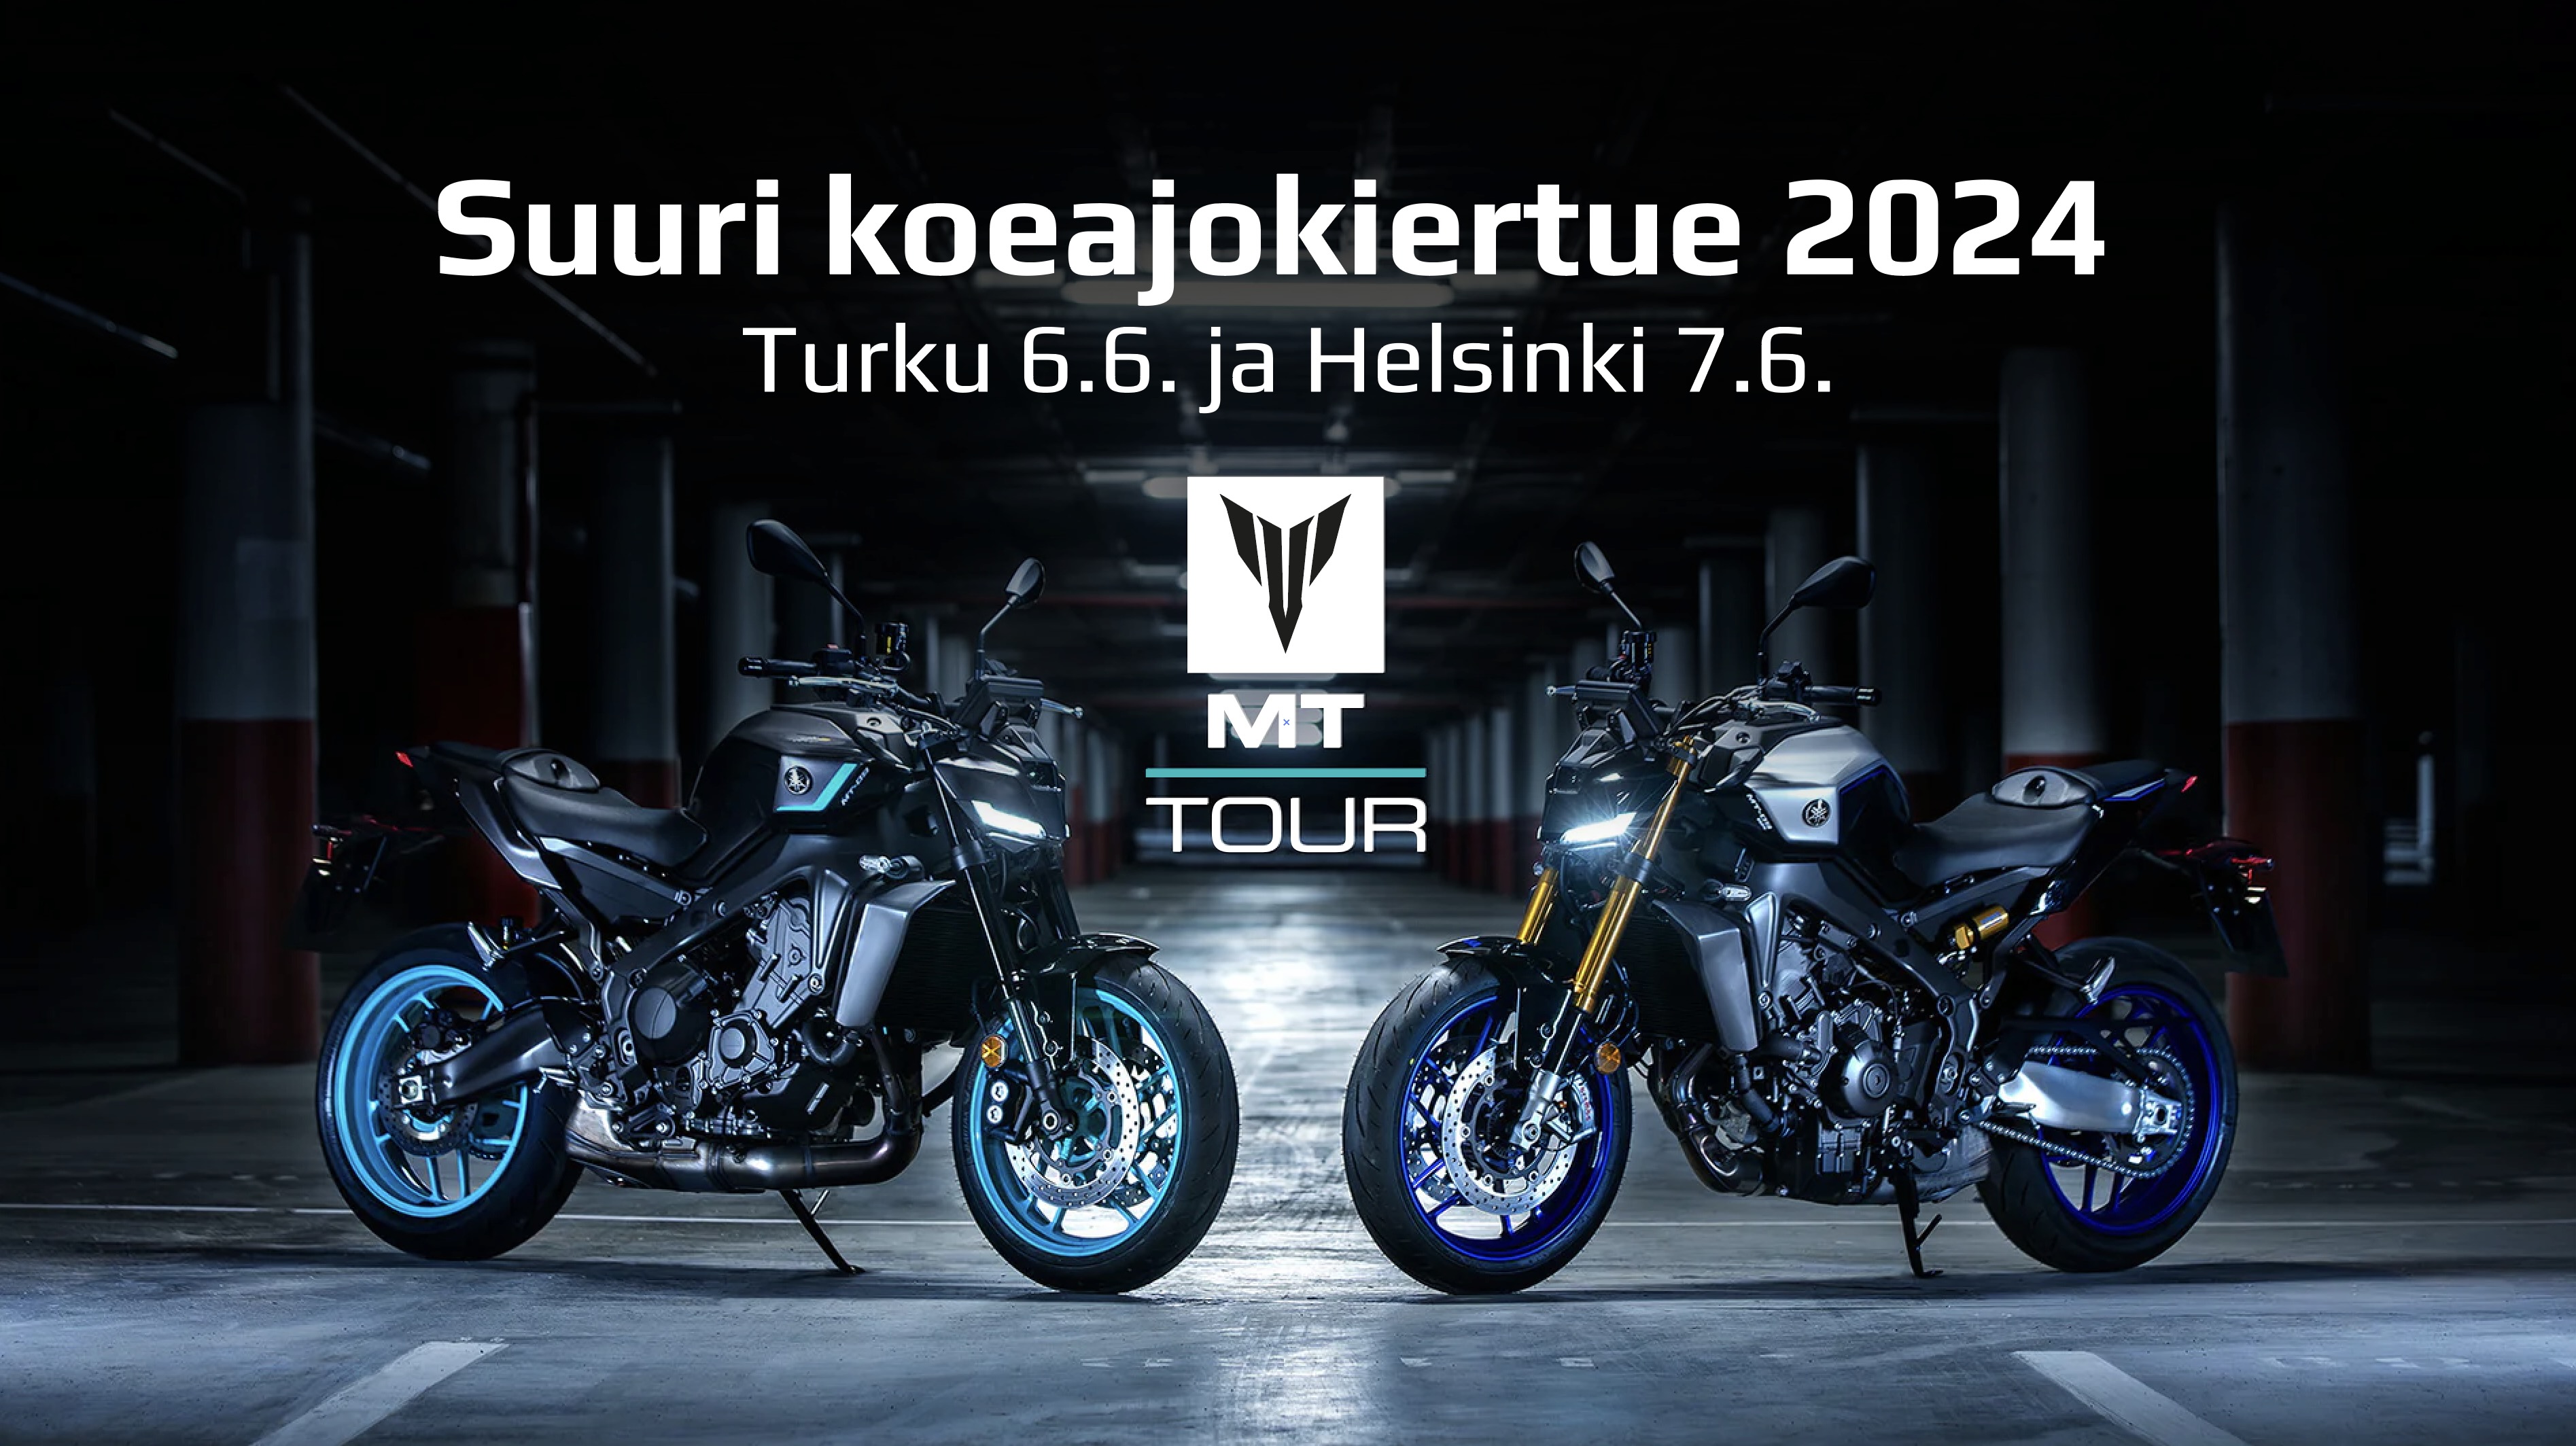 MT Tour 2024 saapuu Turkuun ja Helsinkiin!